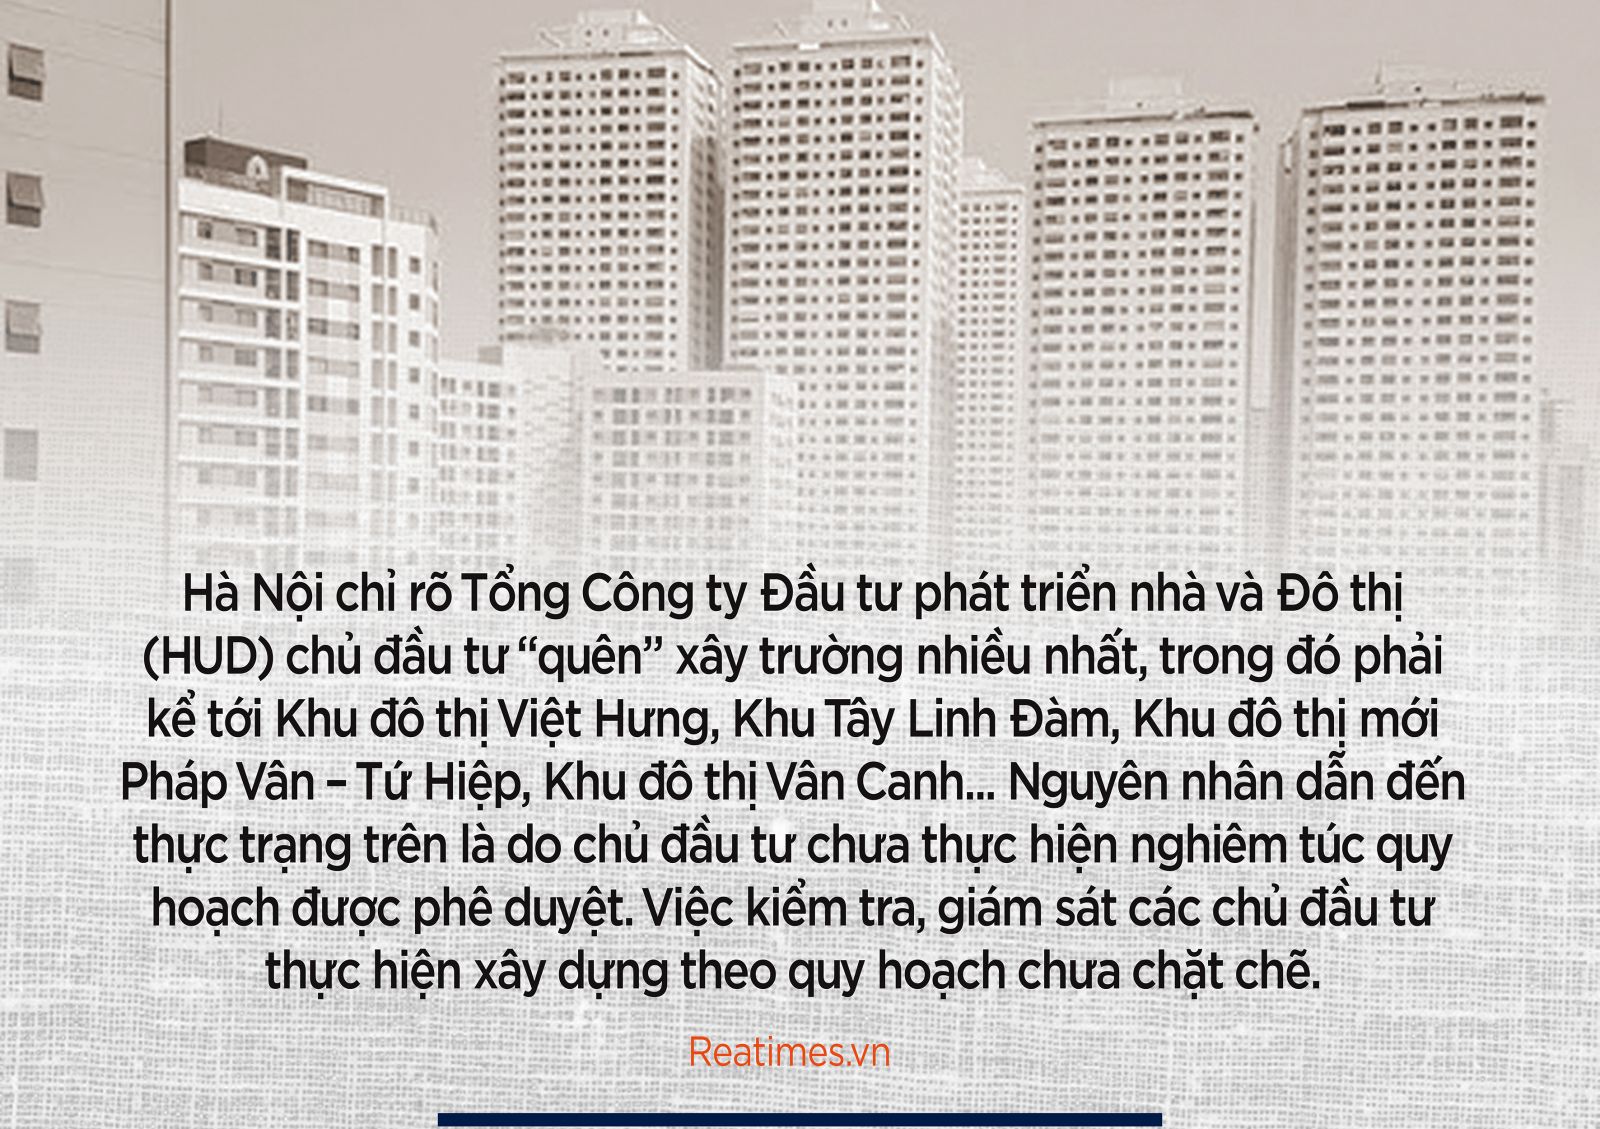 Nhiều khu đô thị ở Hà Nội "quên" trường học, ai chịu trách nhiệm?